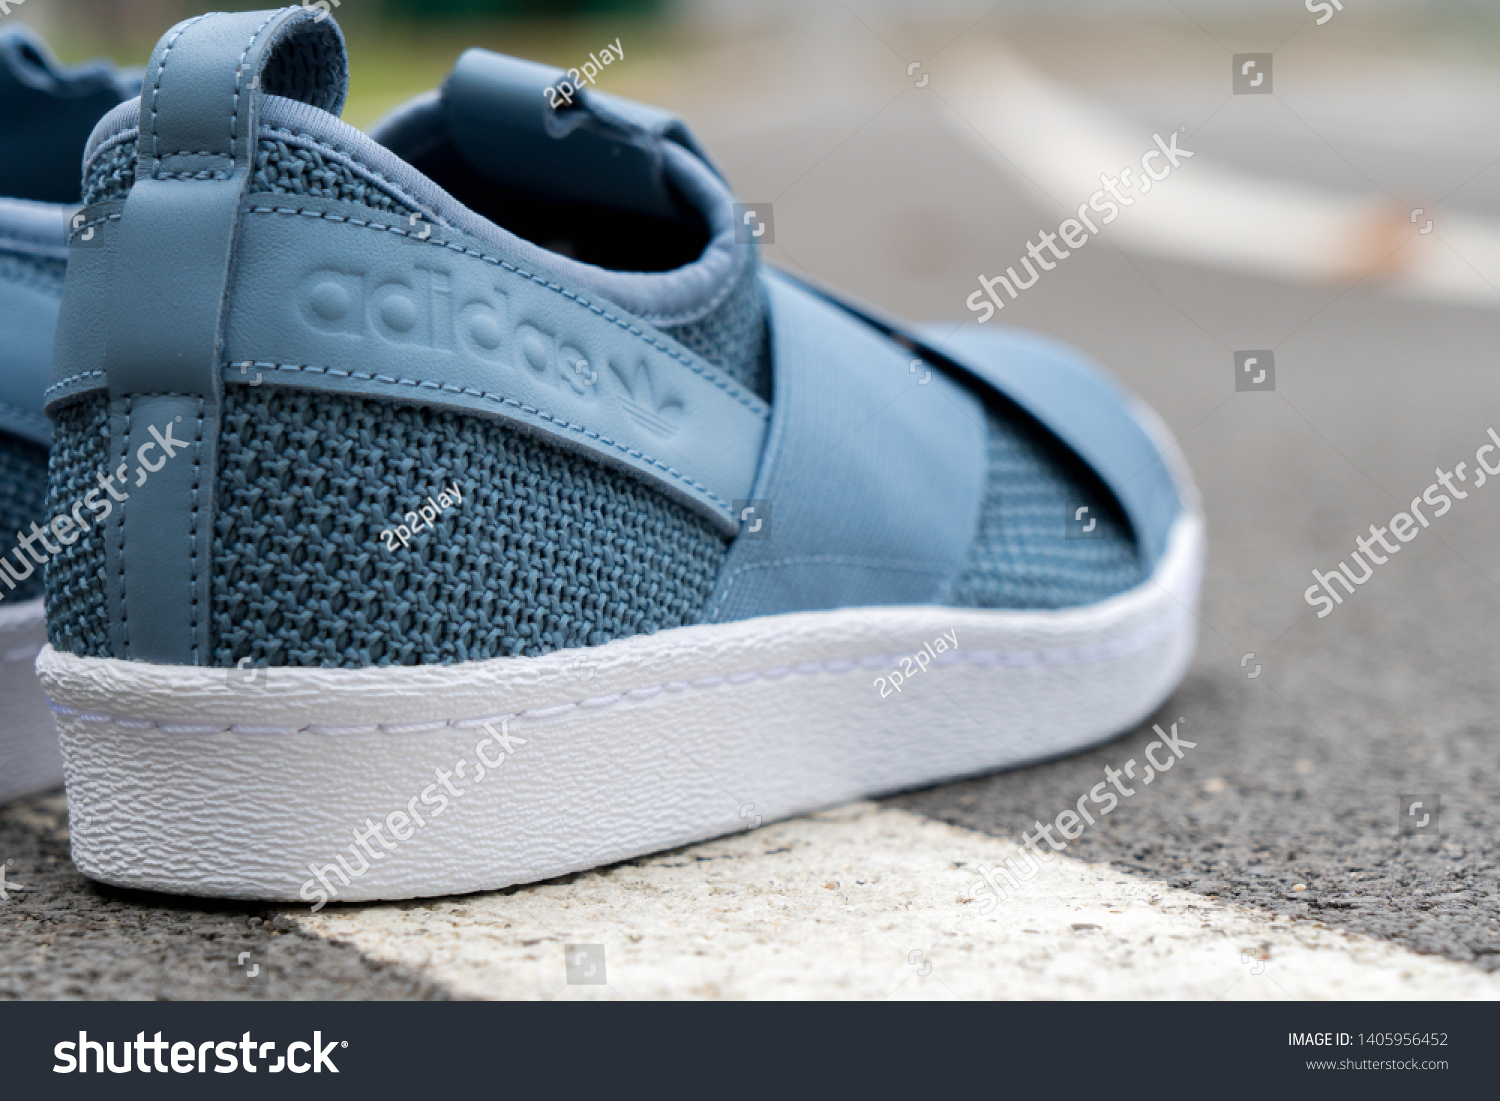 adidas superstar slip on navy blue